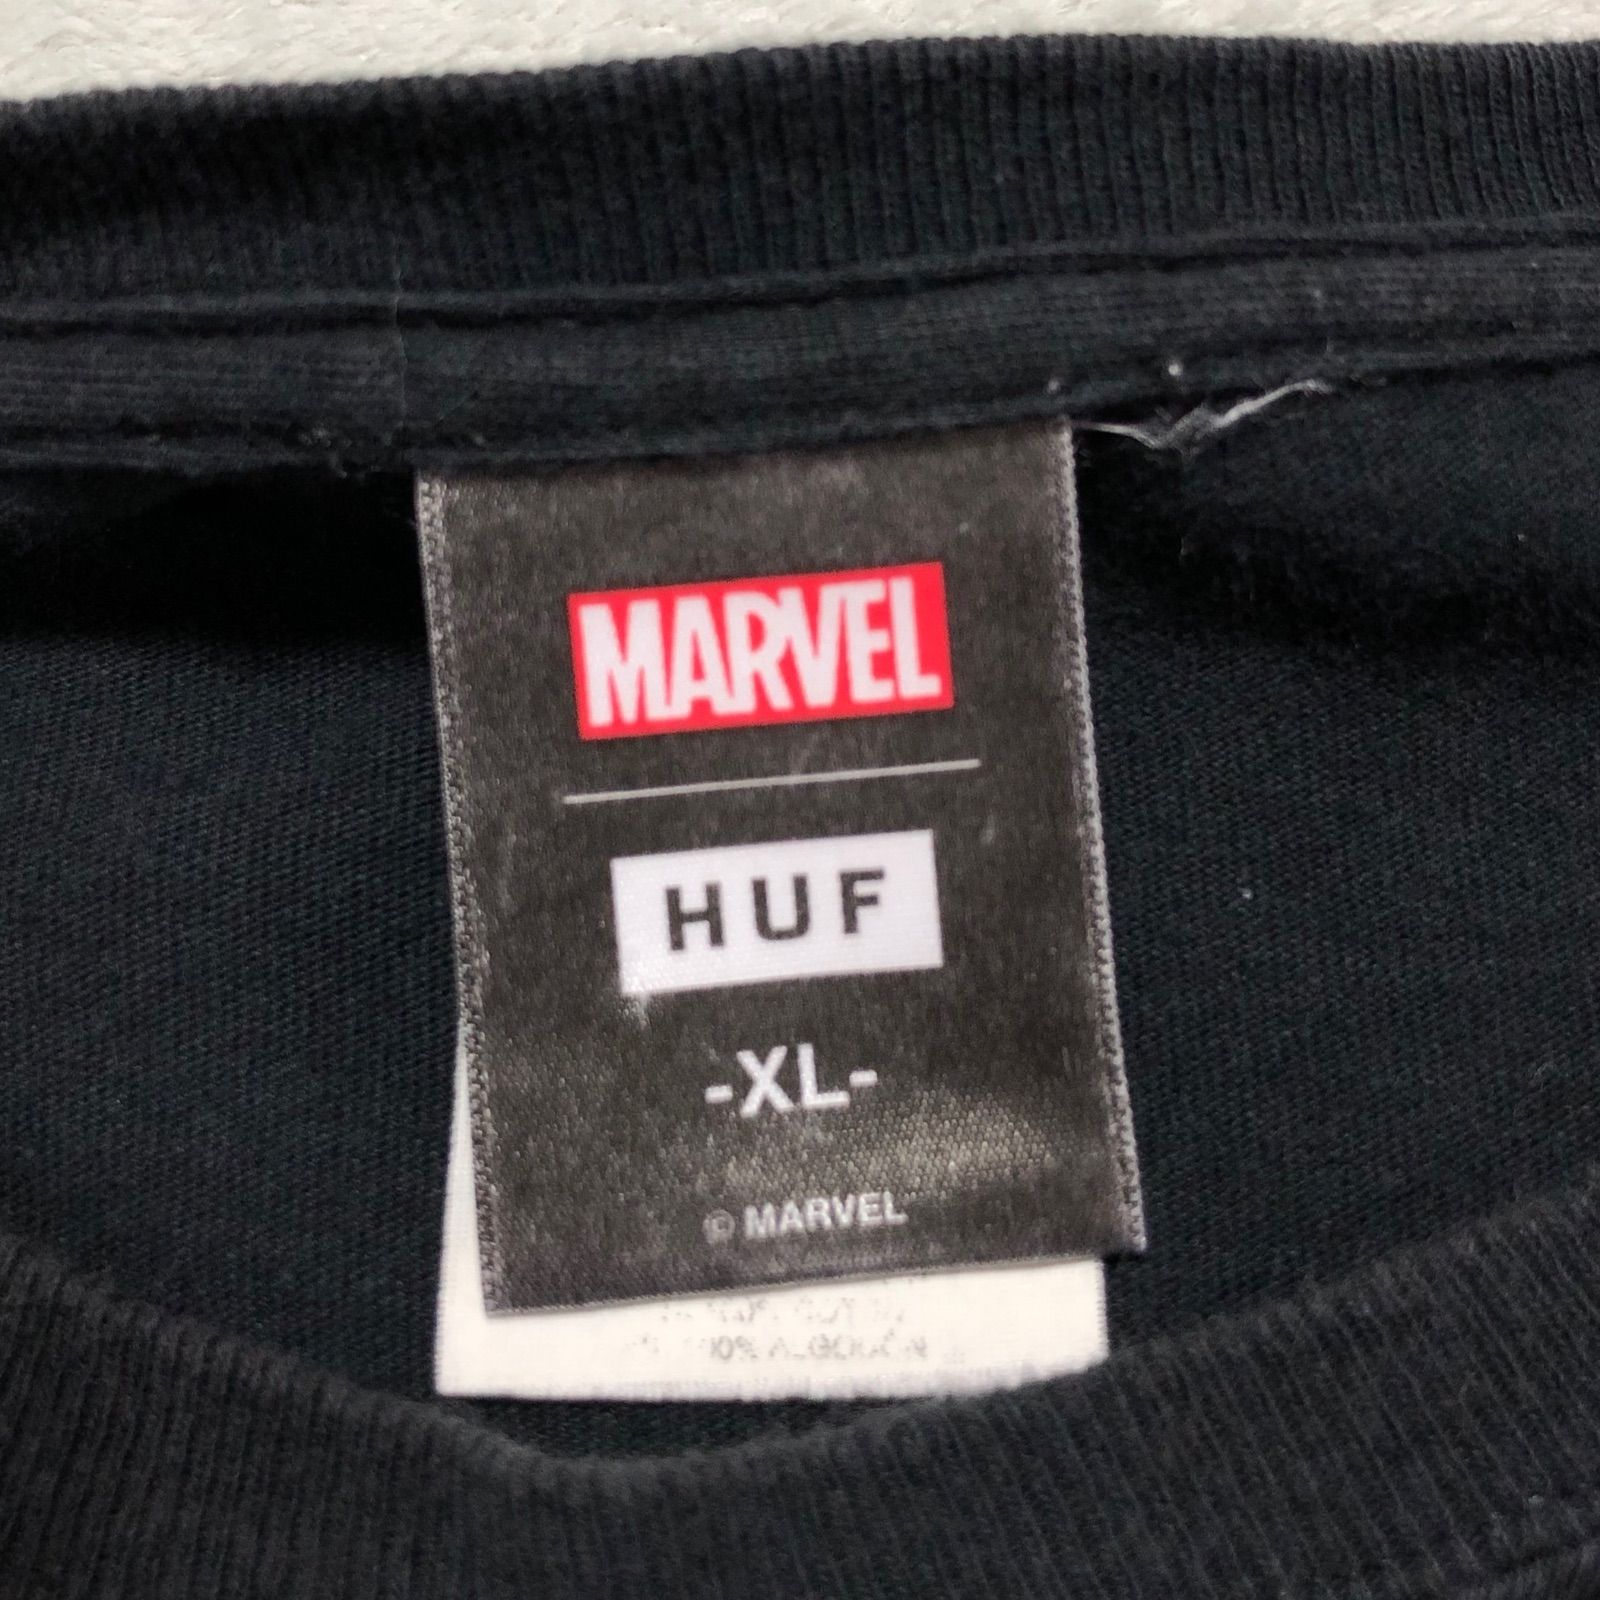 HUF × HULK プリントTシャツ ハルク MARVEL マーベル キャラクター 半袖カットソー ショートスリーブ ブラック 黒 ハフ